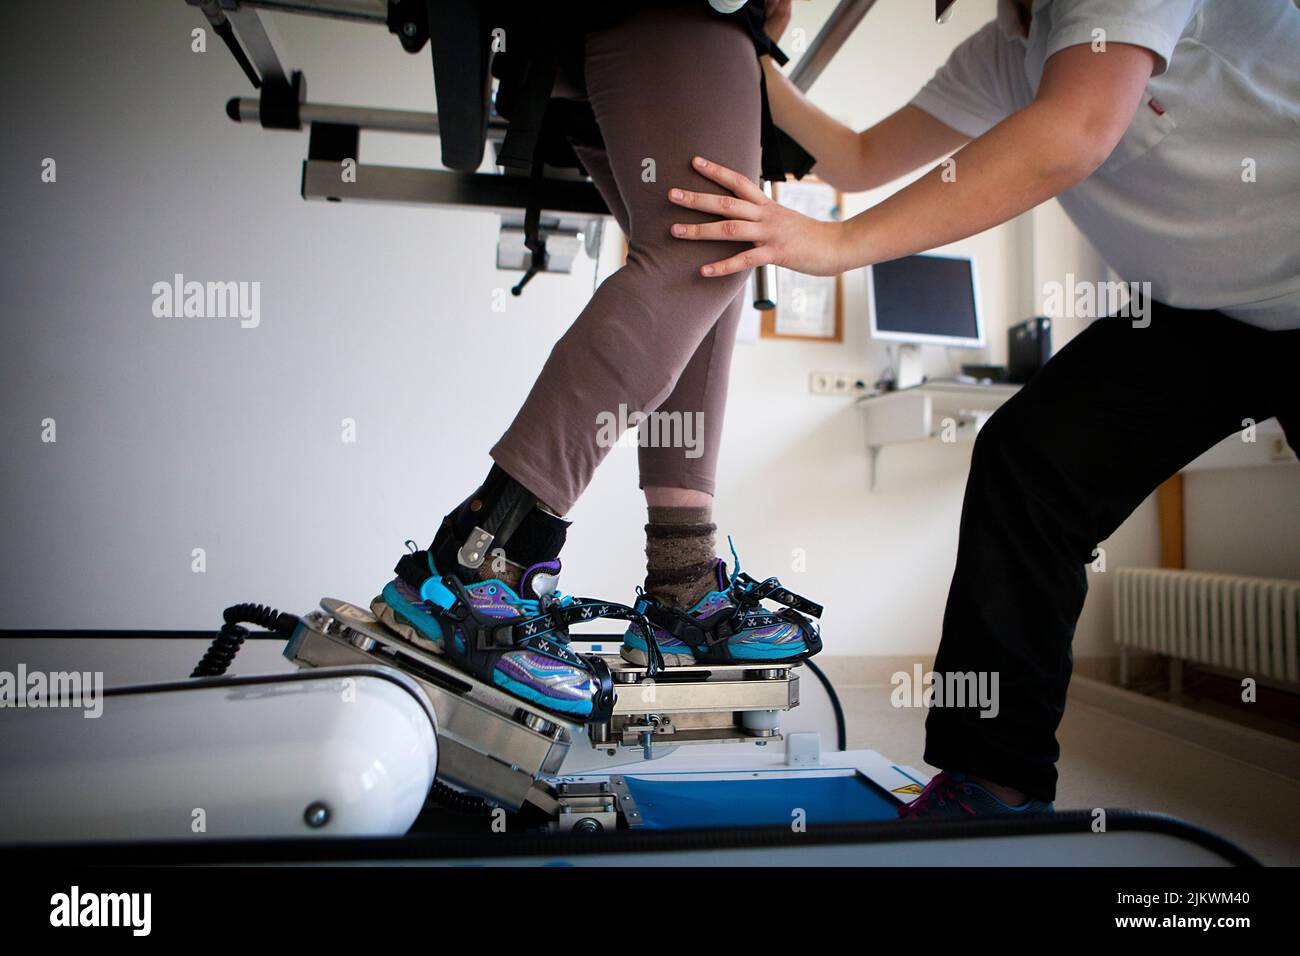 Capacitación en marcha mediante asistencia robótica para facilitar los ejercicios de rehabilitación. Foto de stock